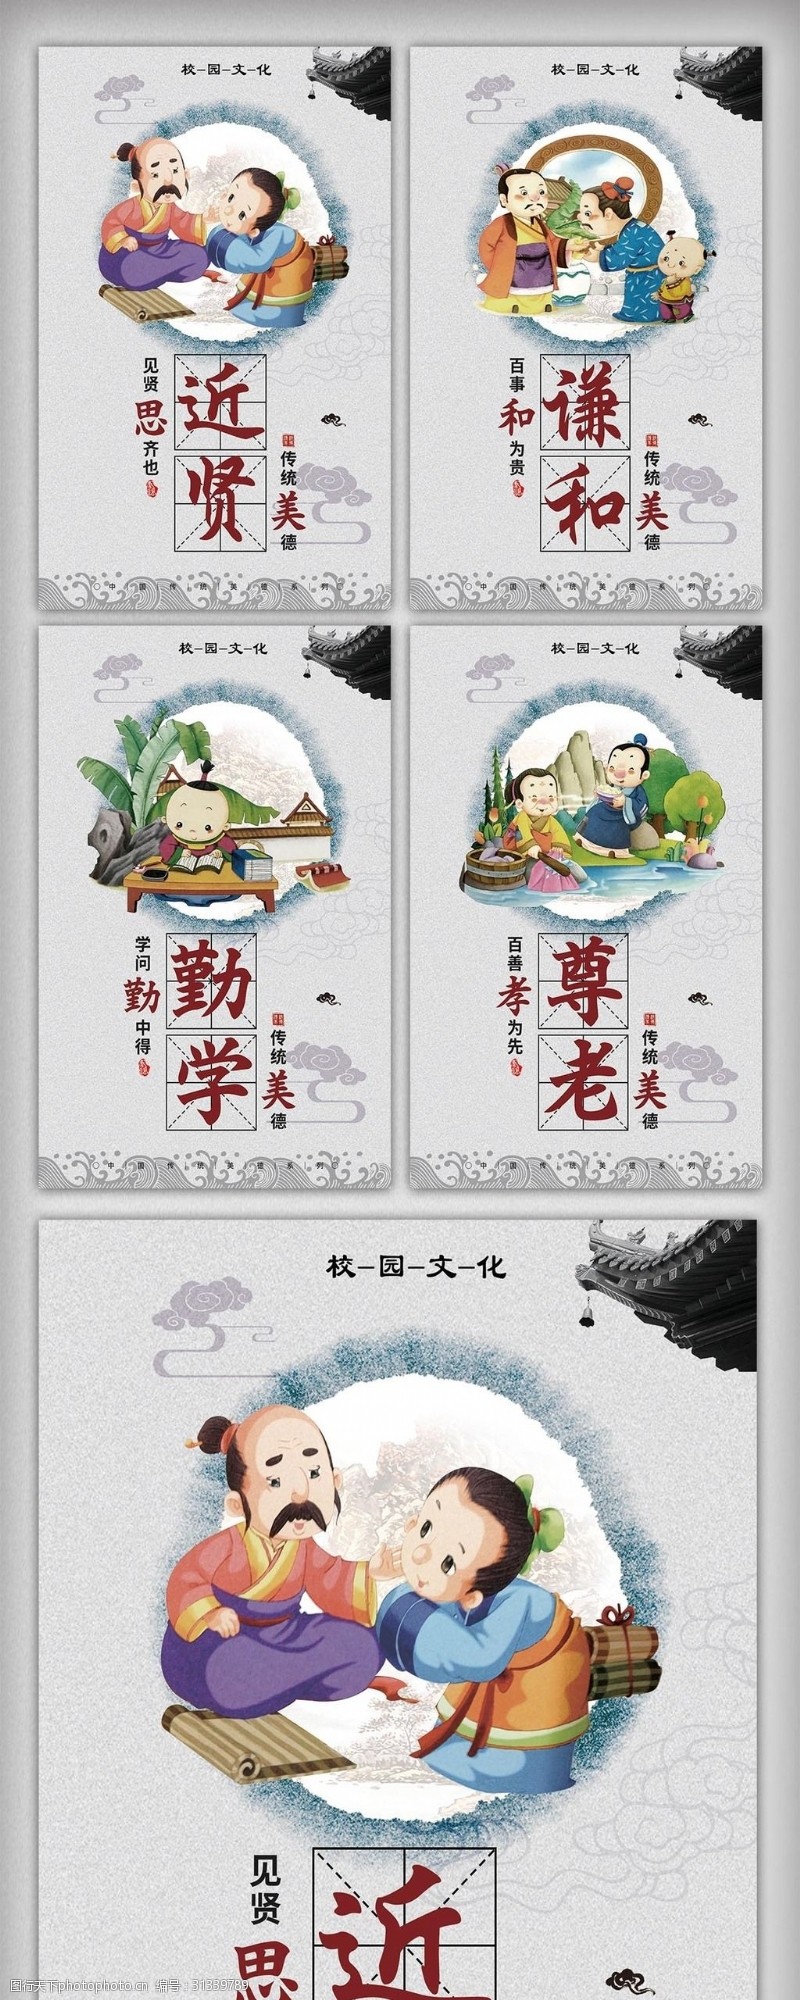 梦想家园中国风校园文化宣传挂画设计模板